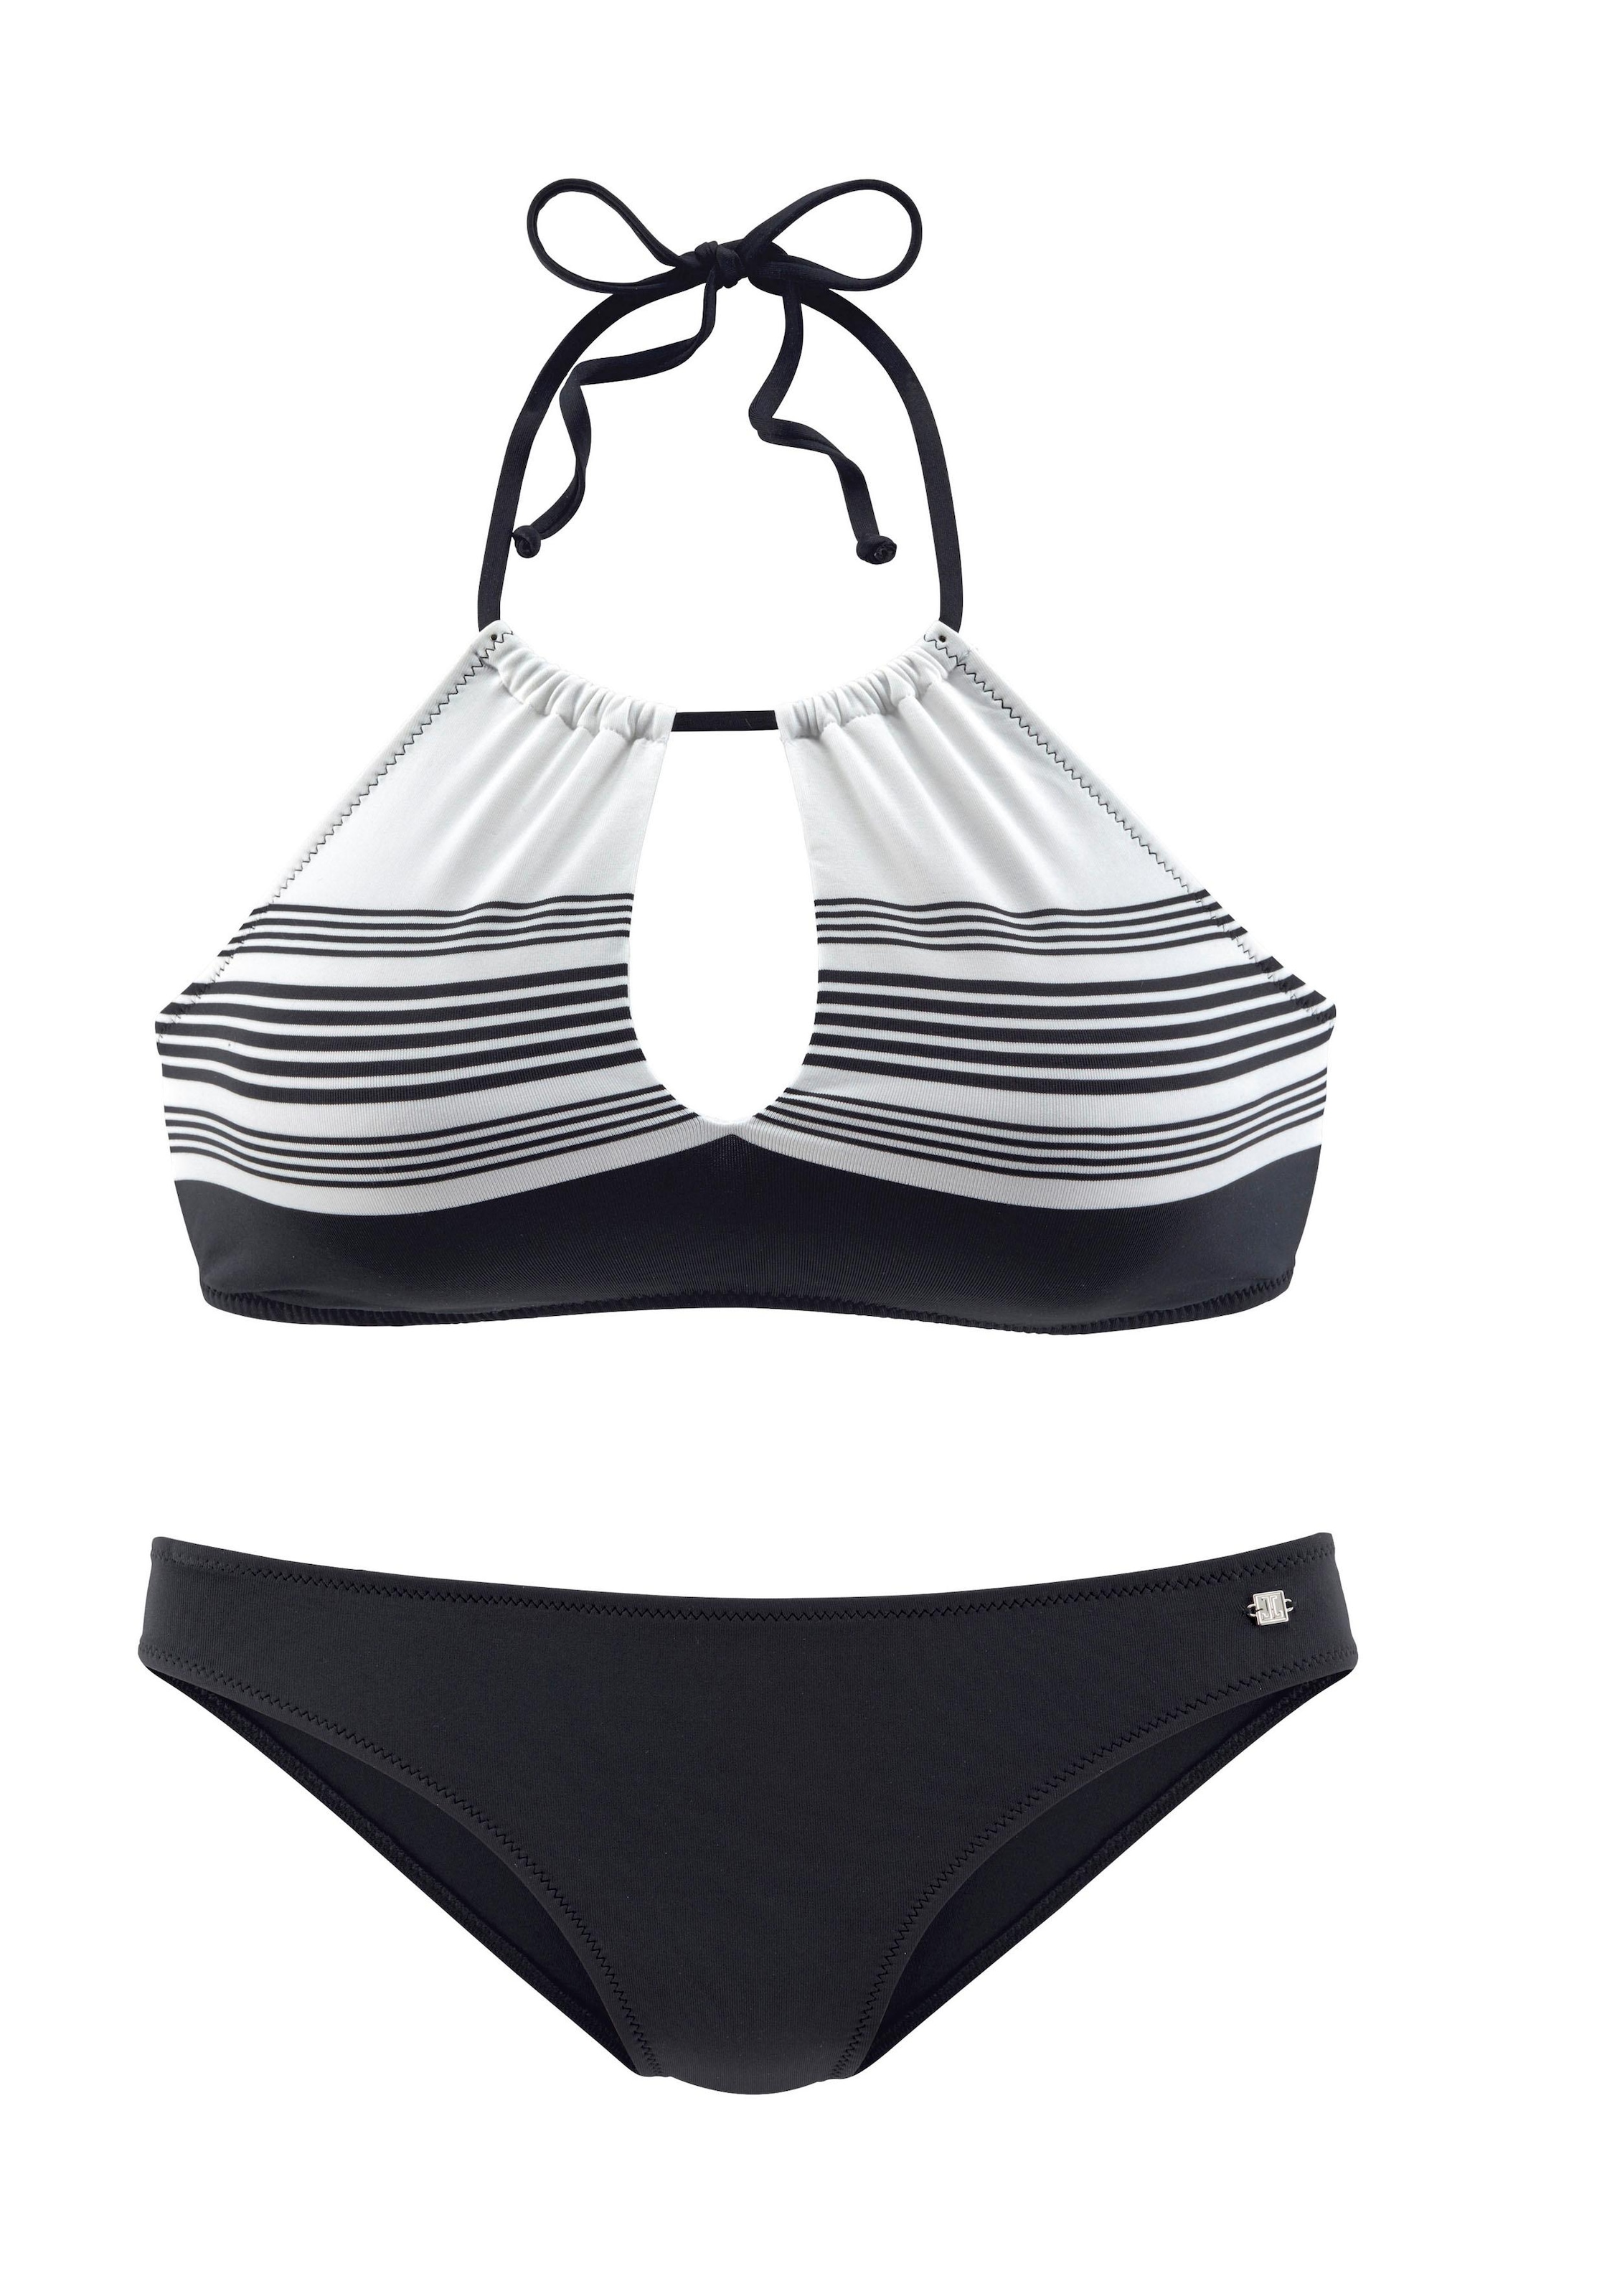 JETTE Bustier-Bikini, mit hochwertigem Design » LASCANA | Bademode,  Unterwäsche & Lingerie online kaufen | Bustier-Bikinis